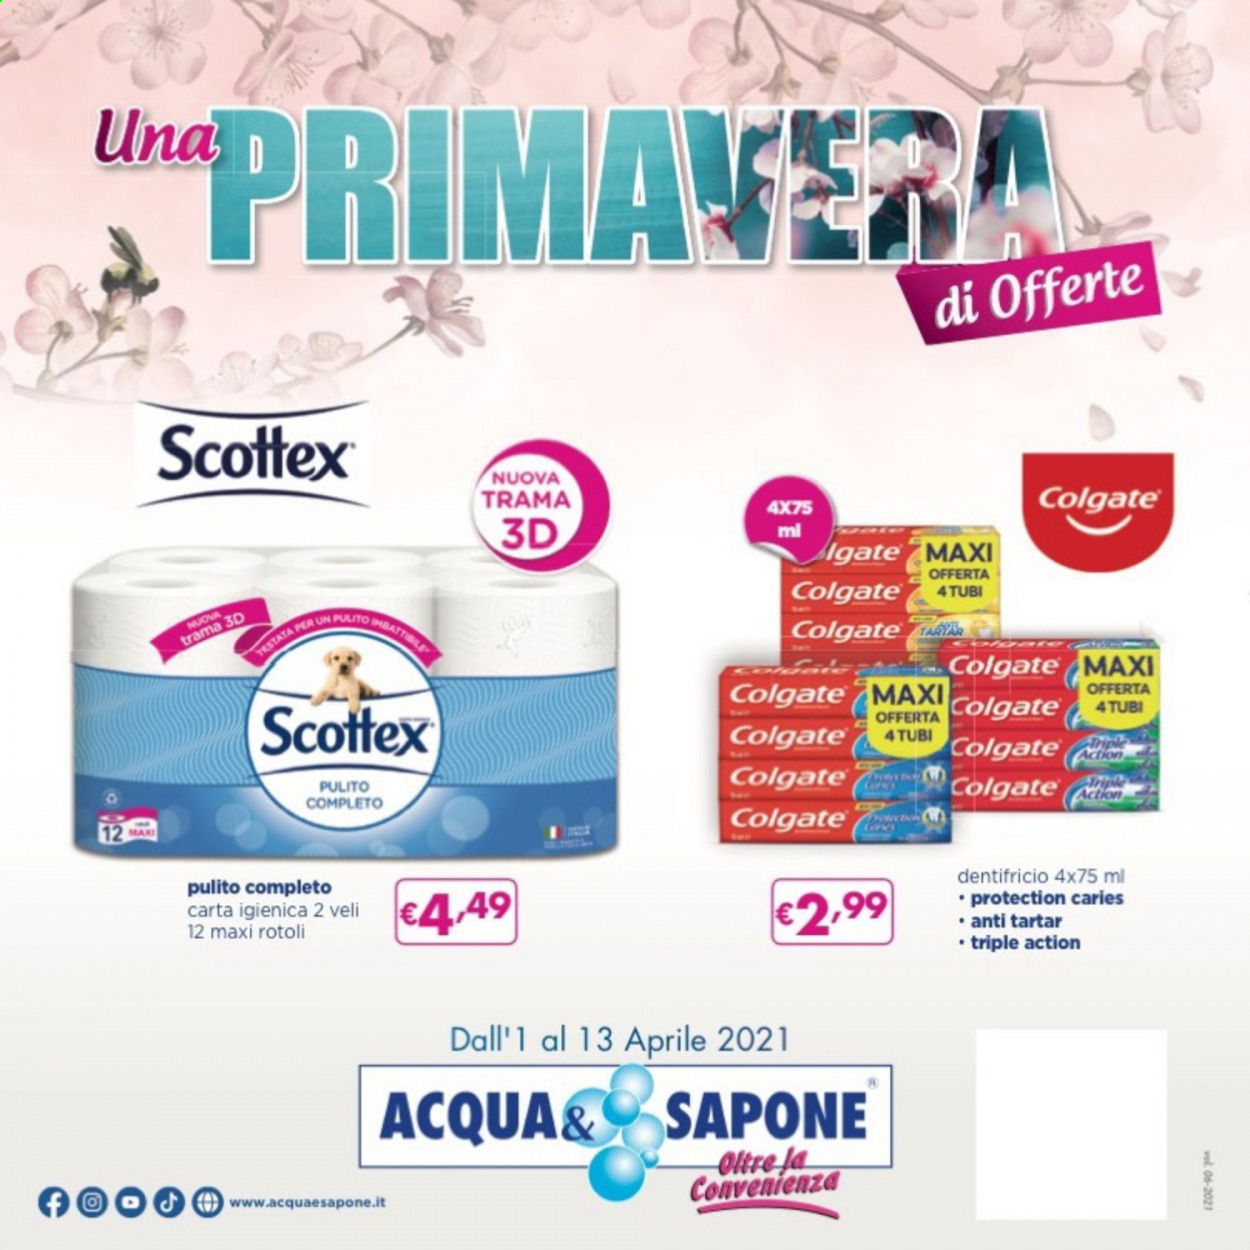 thumbnail - Volantino Acqua & Sapone - 1/4/2021 - 13/4/2021 - Prodotti in offerta - carta igienica, Scottex, sapone, Colgate, dentifricio. Pagina 1.